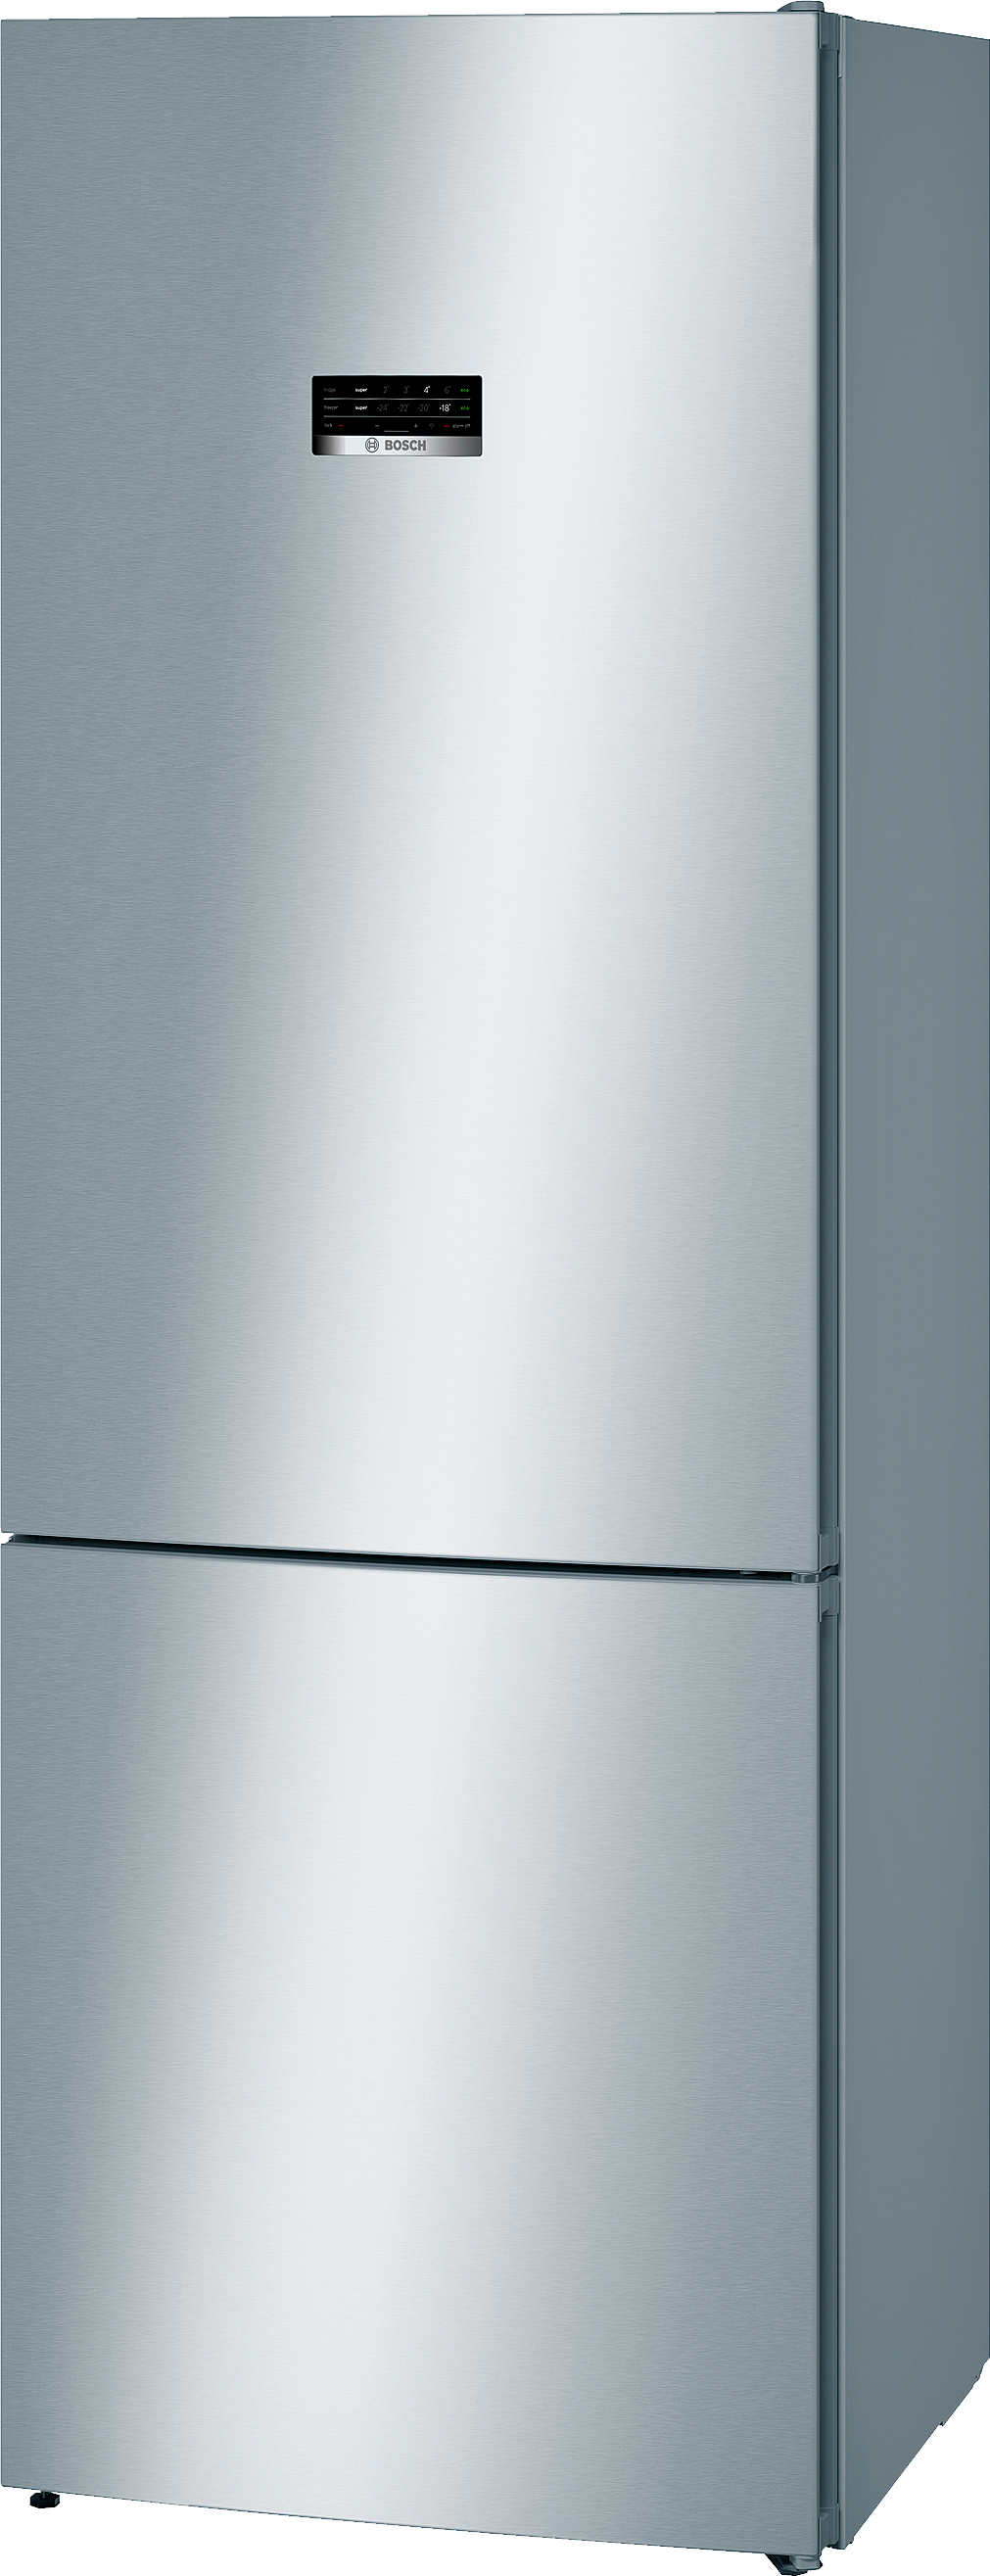 Холодильник Bosch KGN49XI30U в интернет-магазине, главное фото